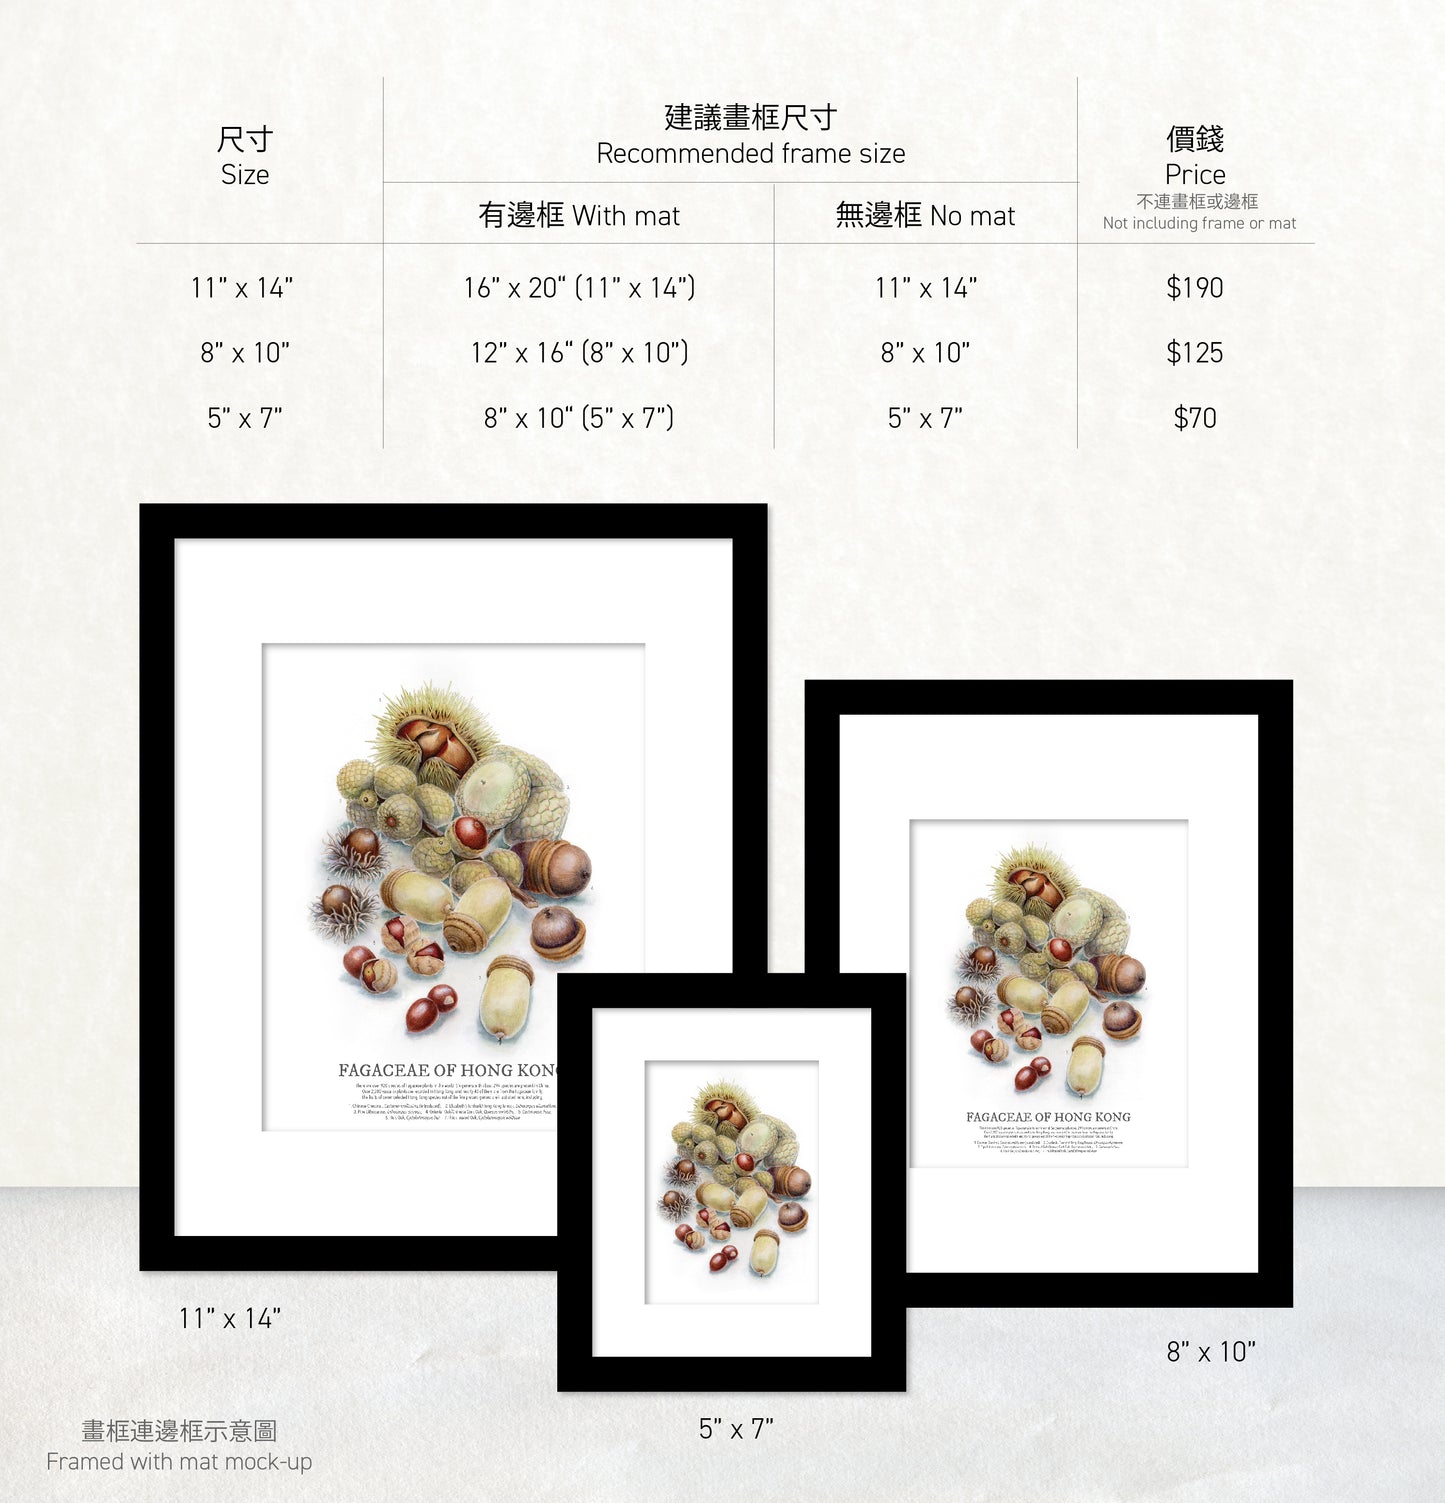 香港生態印刷畫: 精選殼斗科堅果 HK Wildlife Art Print: Selected Fagaceae Nuts